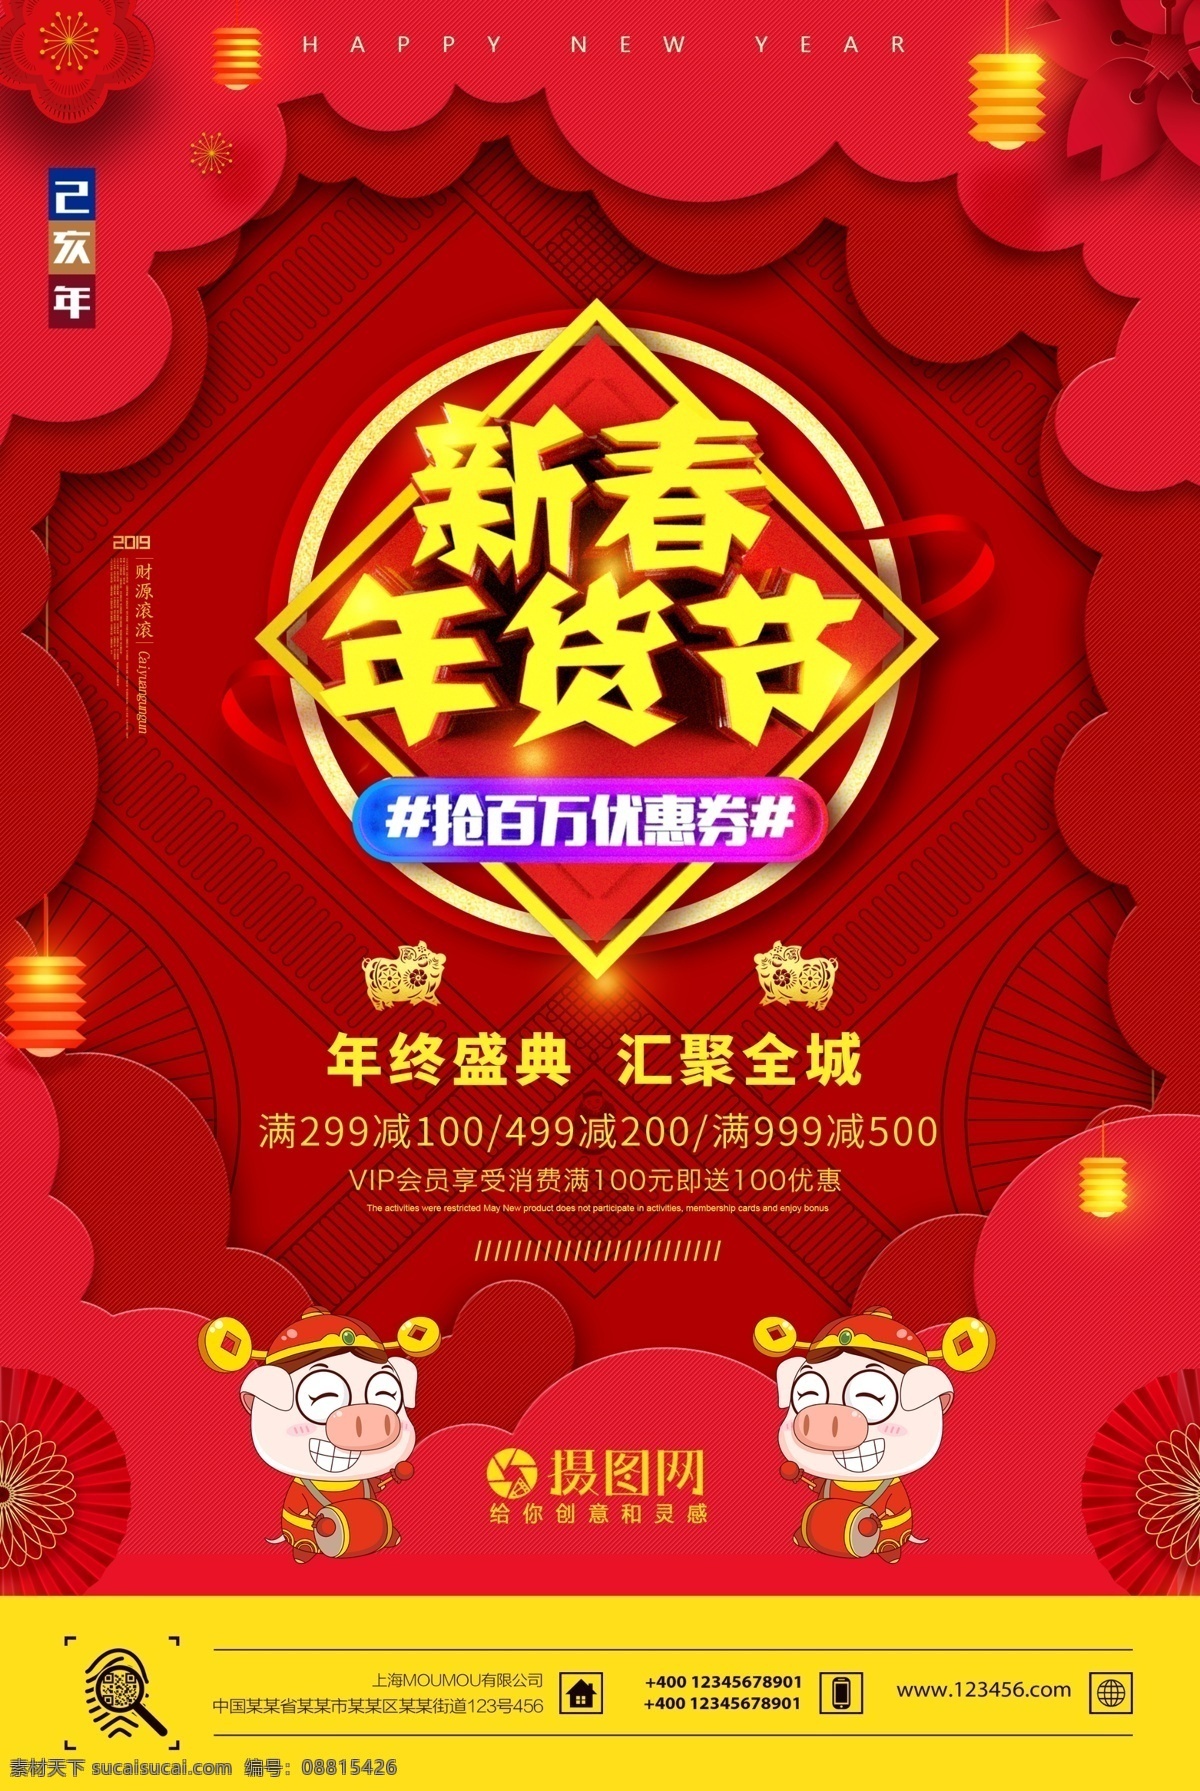 红色 喜庆 新春 年货 节 节日 海报 年终促销 新品上新 年货节 礼品 节日海报